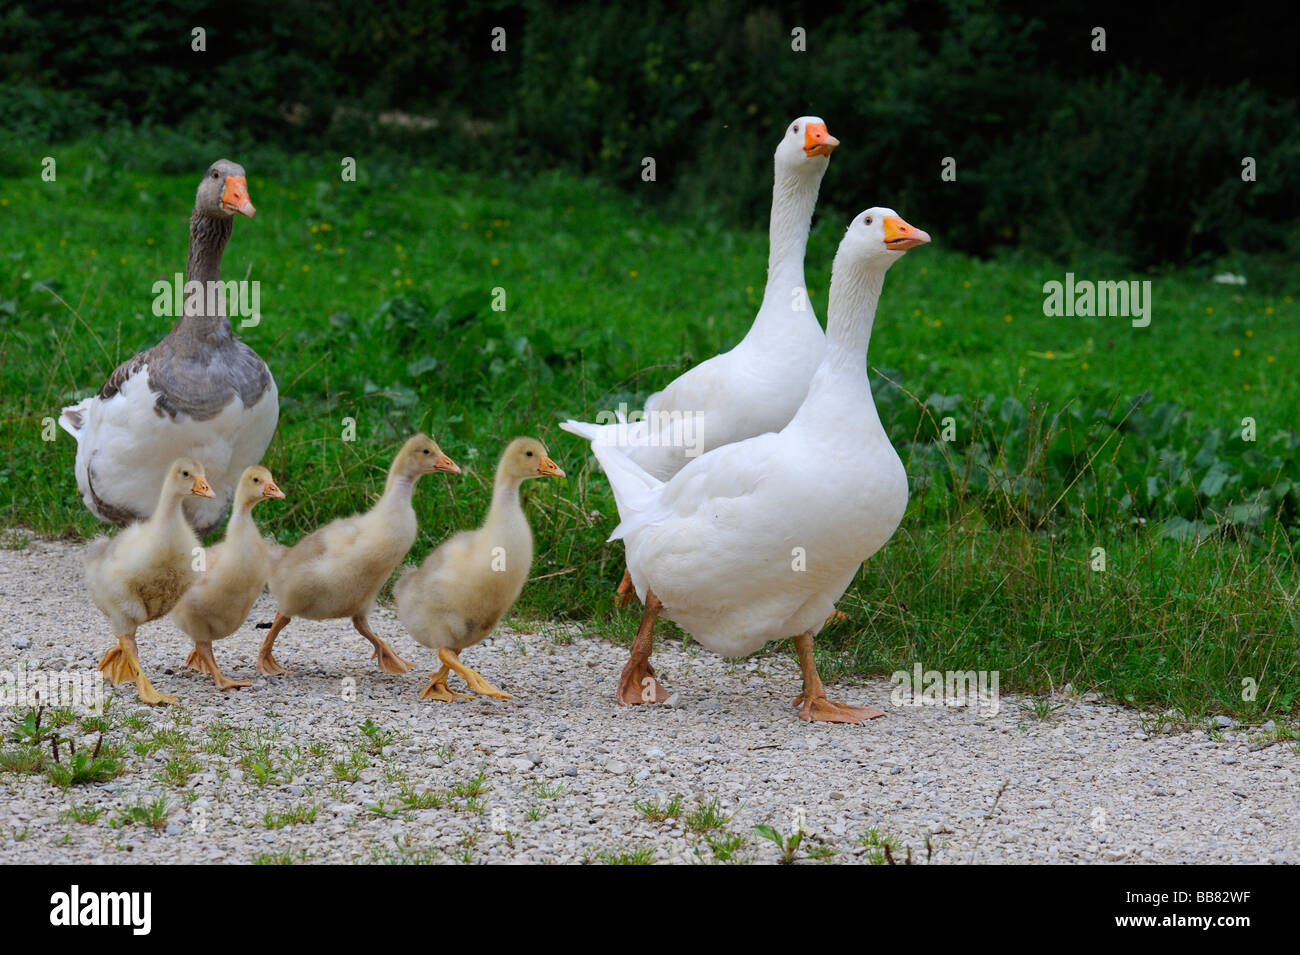 Geese with fledglings, gosling, Swabian Alb, Baden-Wuerttemberg, Germany, Europe Stock Photo